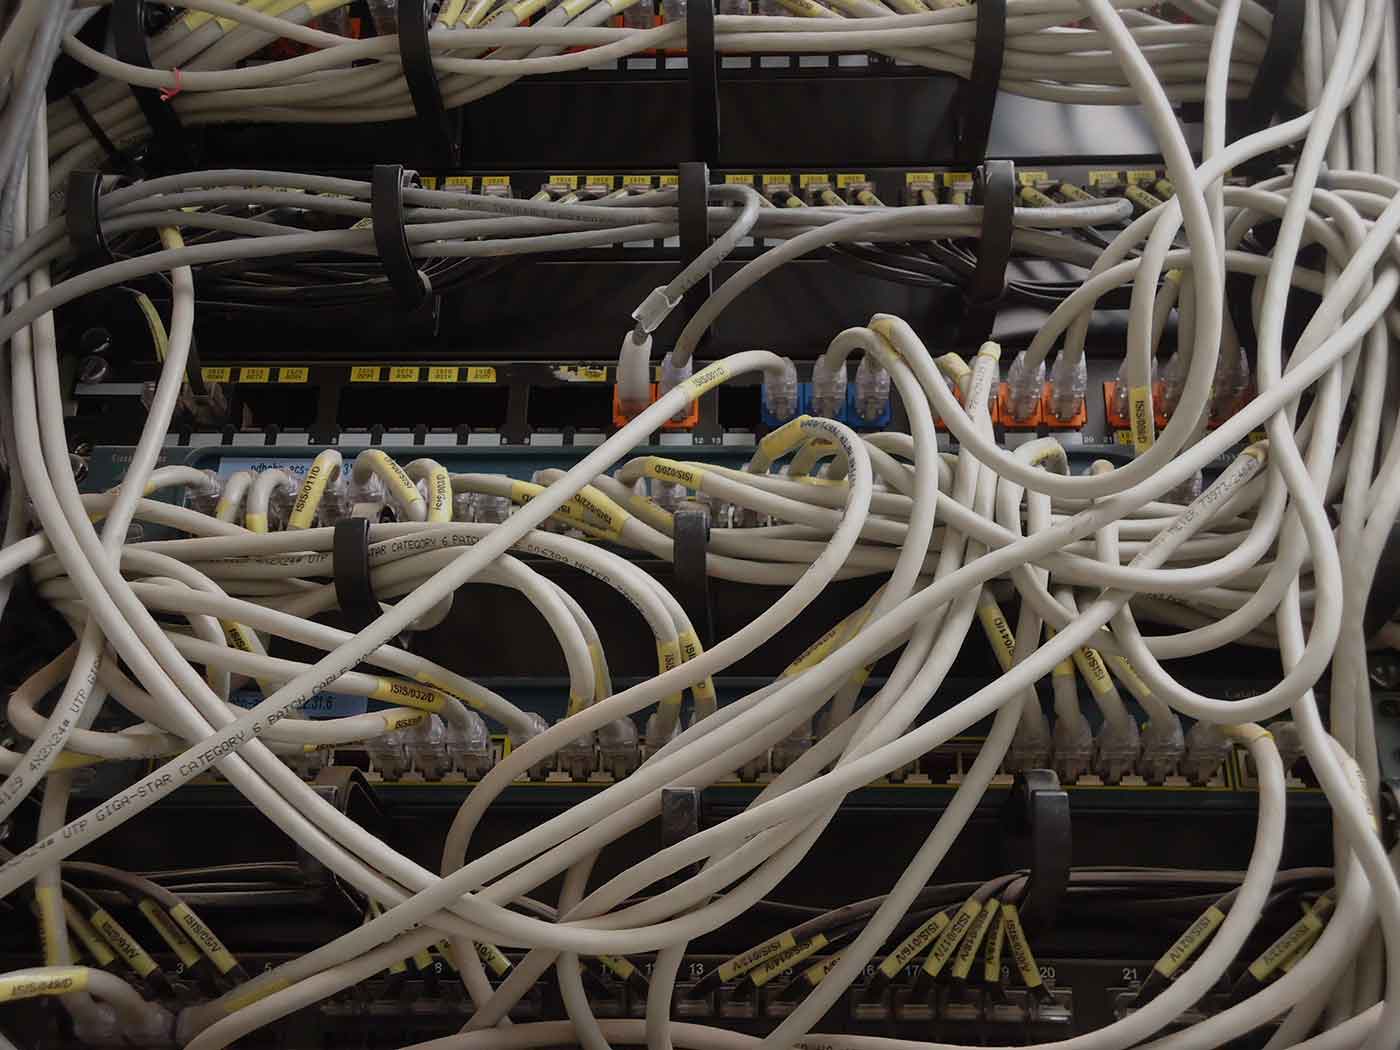 Spaghetti cables